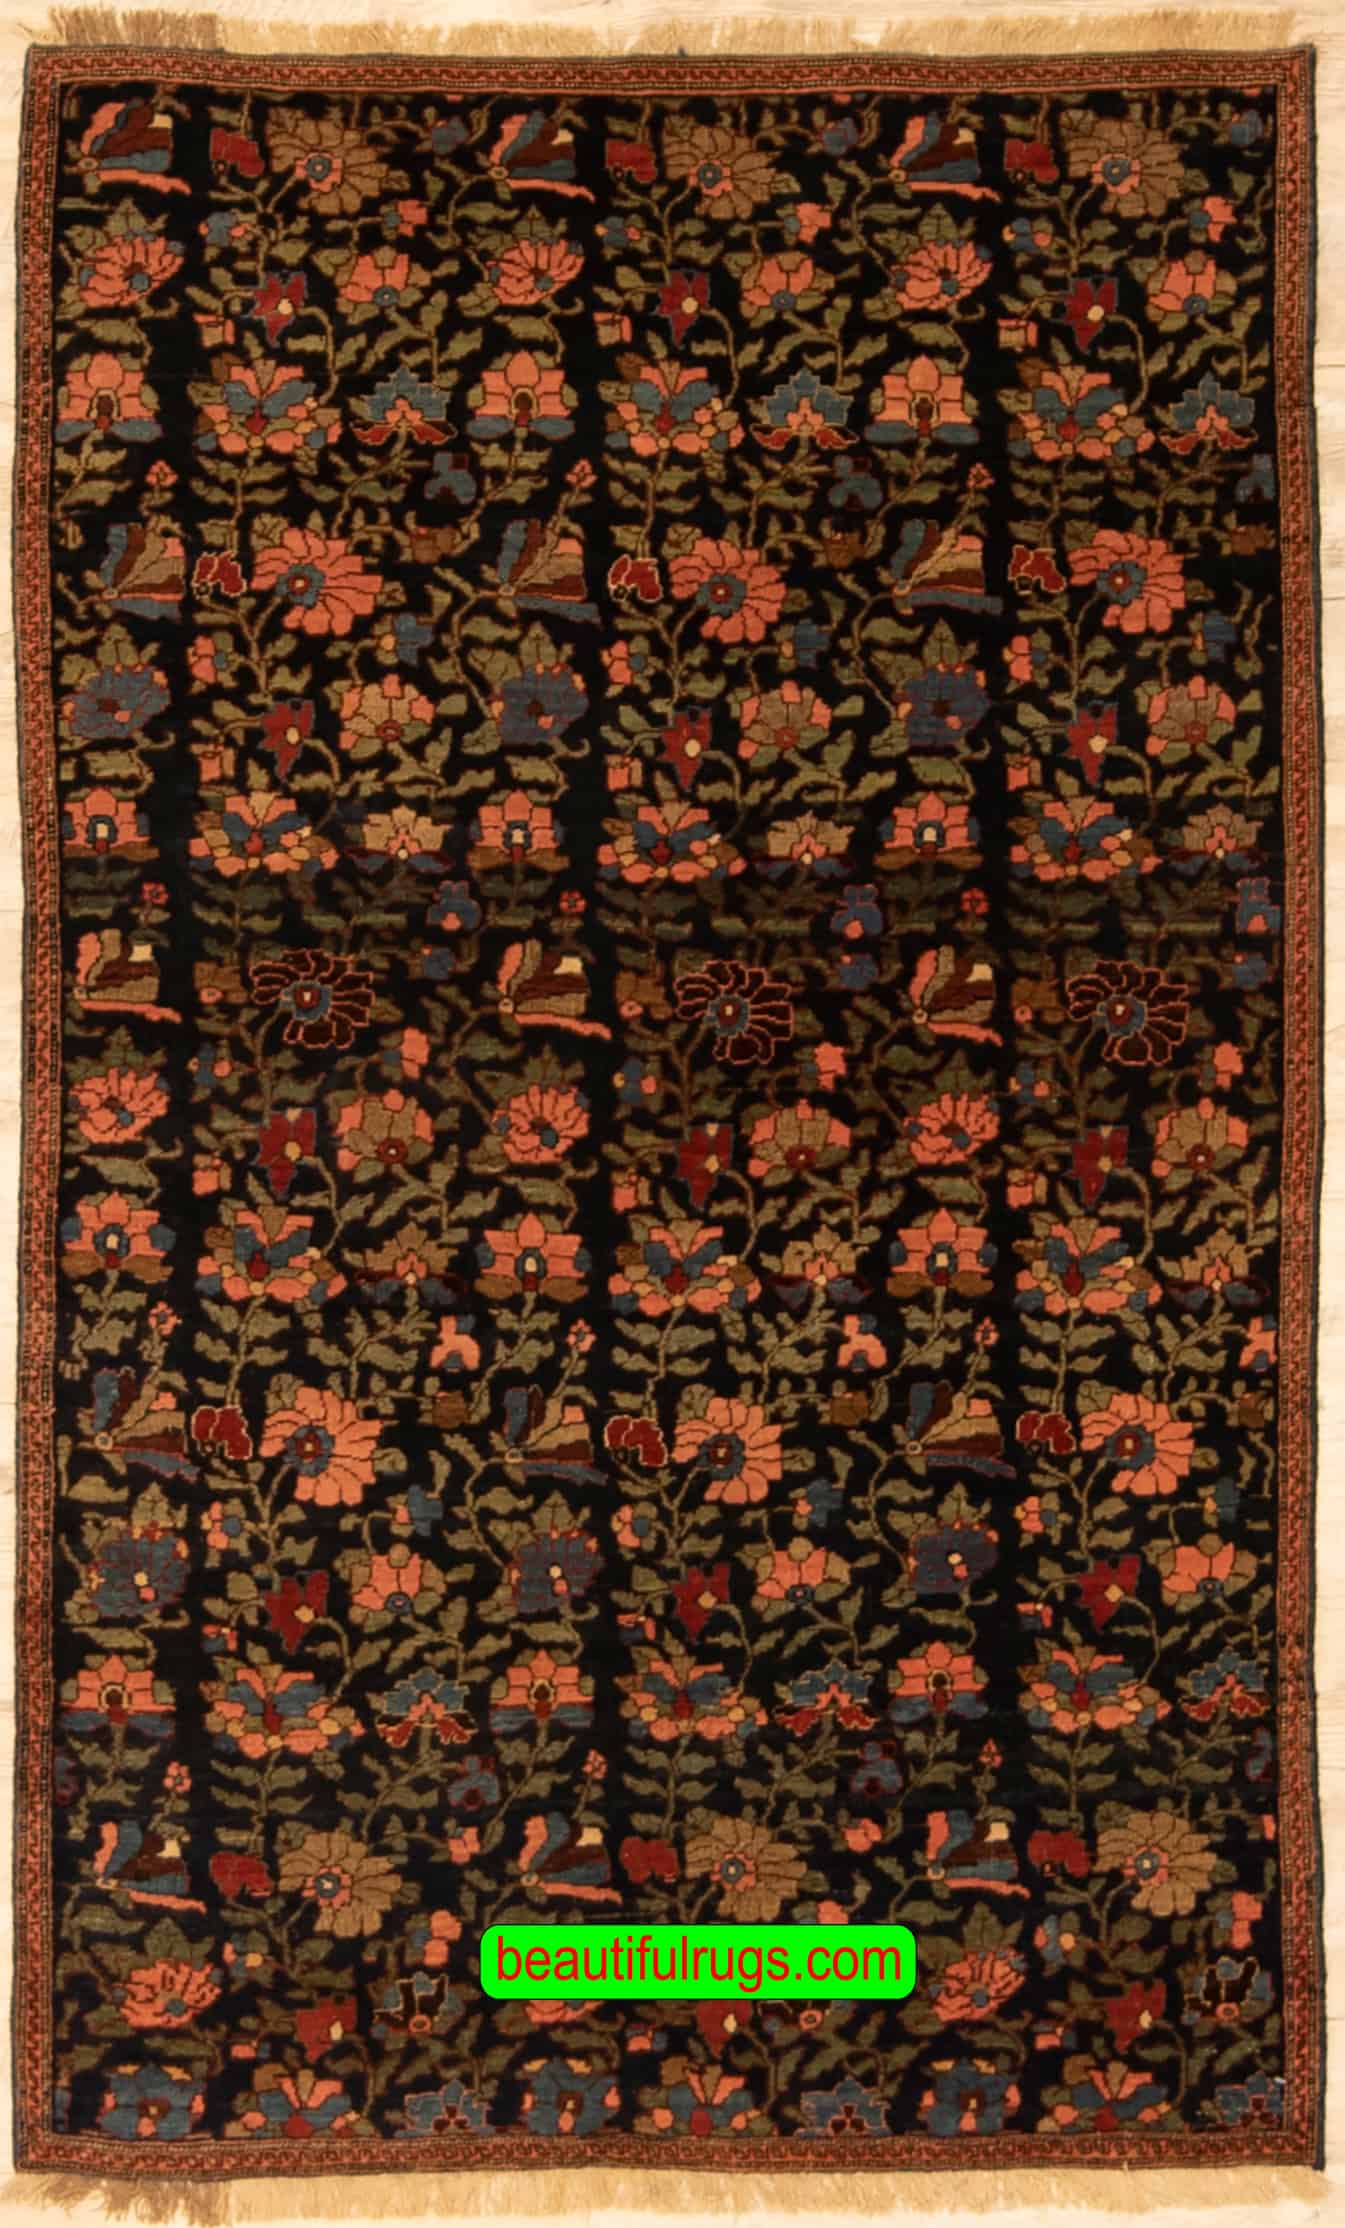 Handmade Antique Persian Bijar Rug, Floral Design Vegetable Dyed Rug, size 3.5x5.7, main image